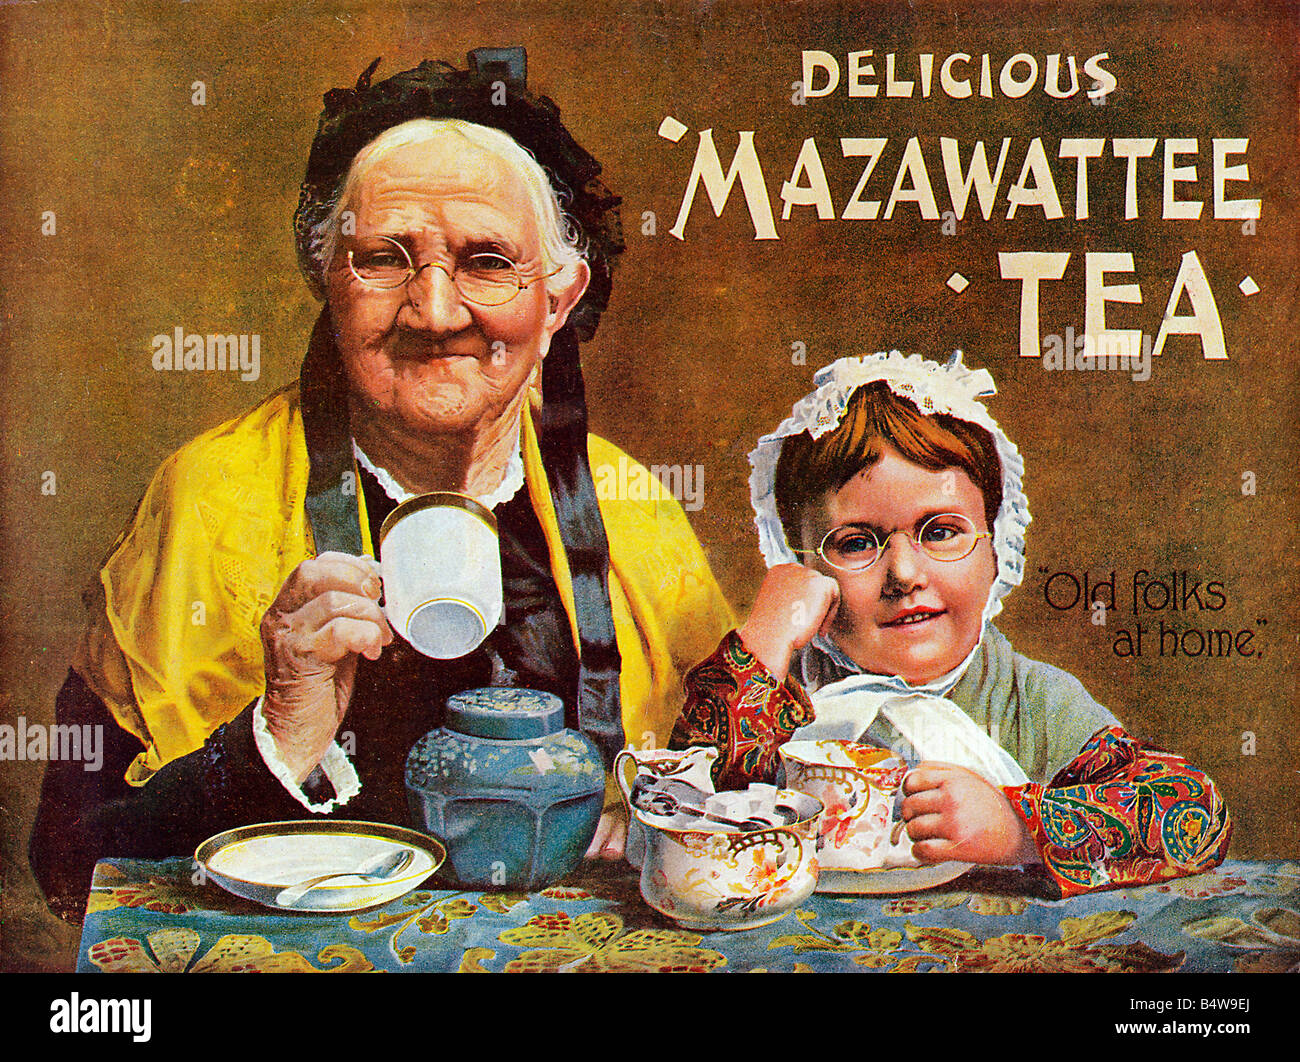 Mazawattee Tee Old Folks At Home Werbung für die englische Marke Tee begann im Jahre 1887 von der Familie Densham Stockfoto